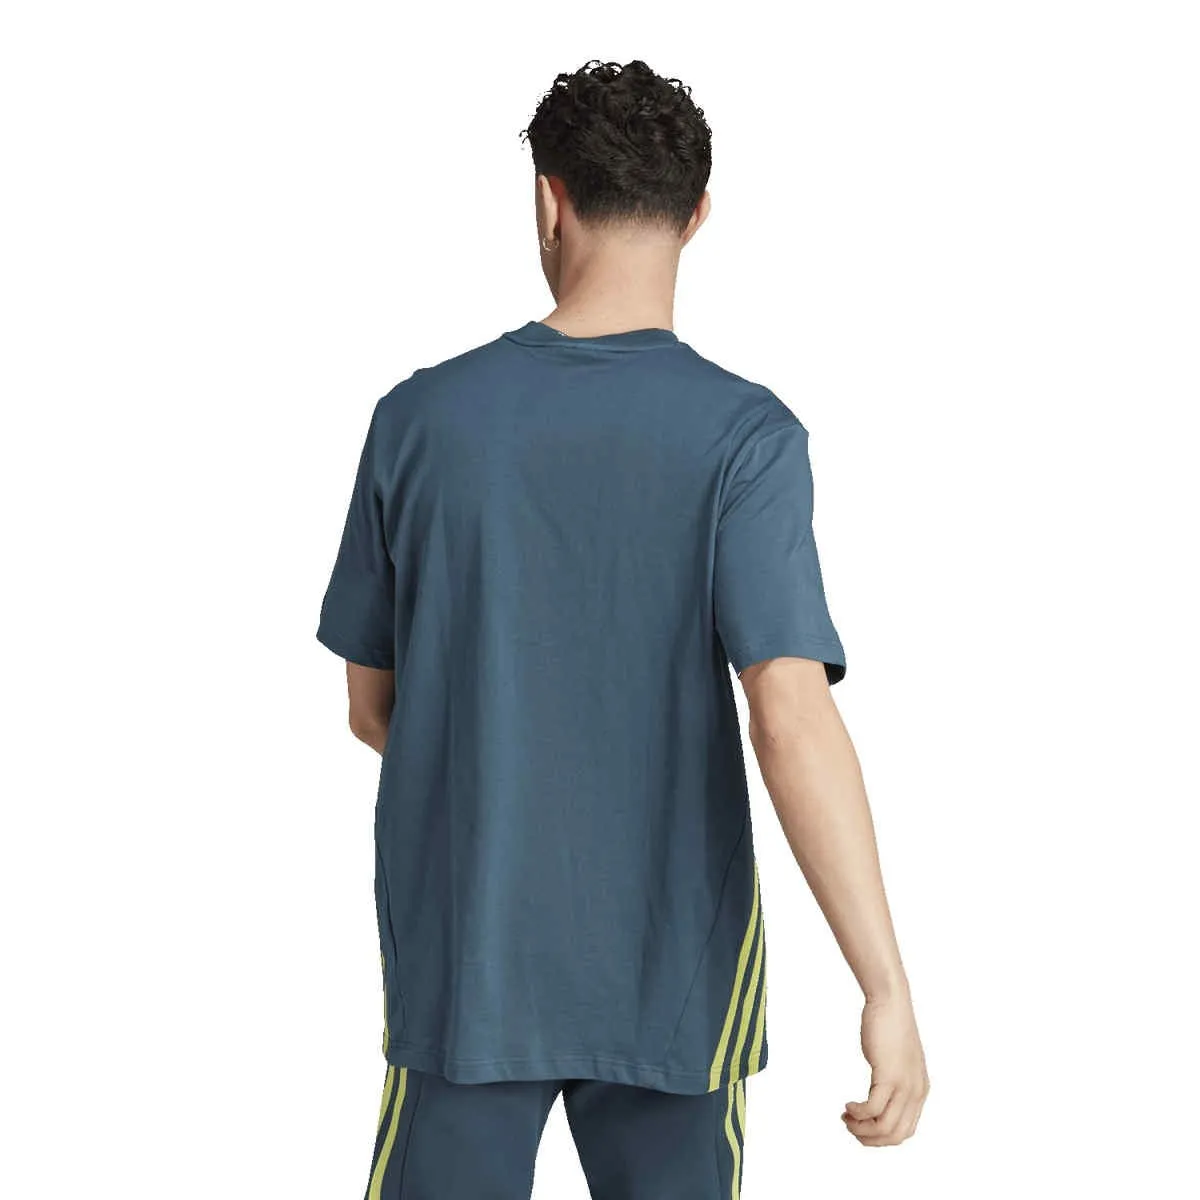 Camiseta adidas Future Icons 3-Stripes azul-gris